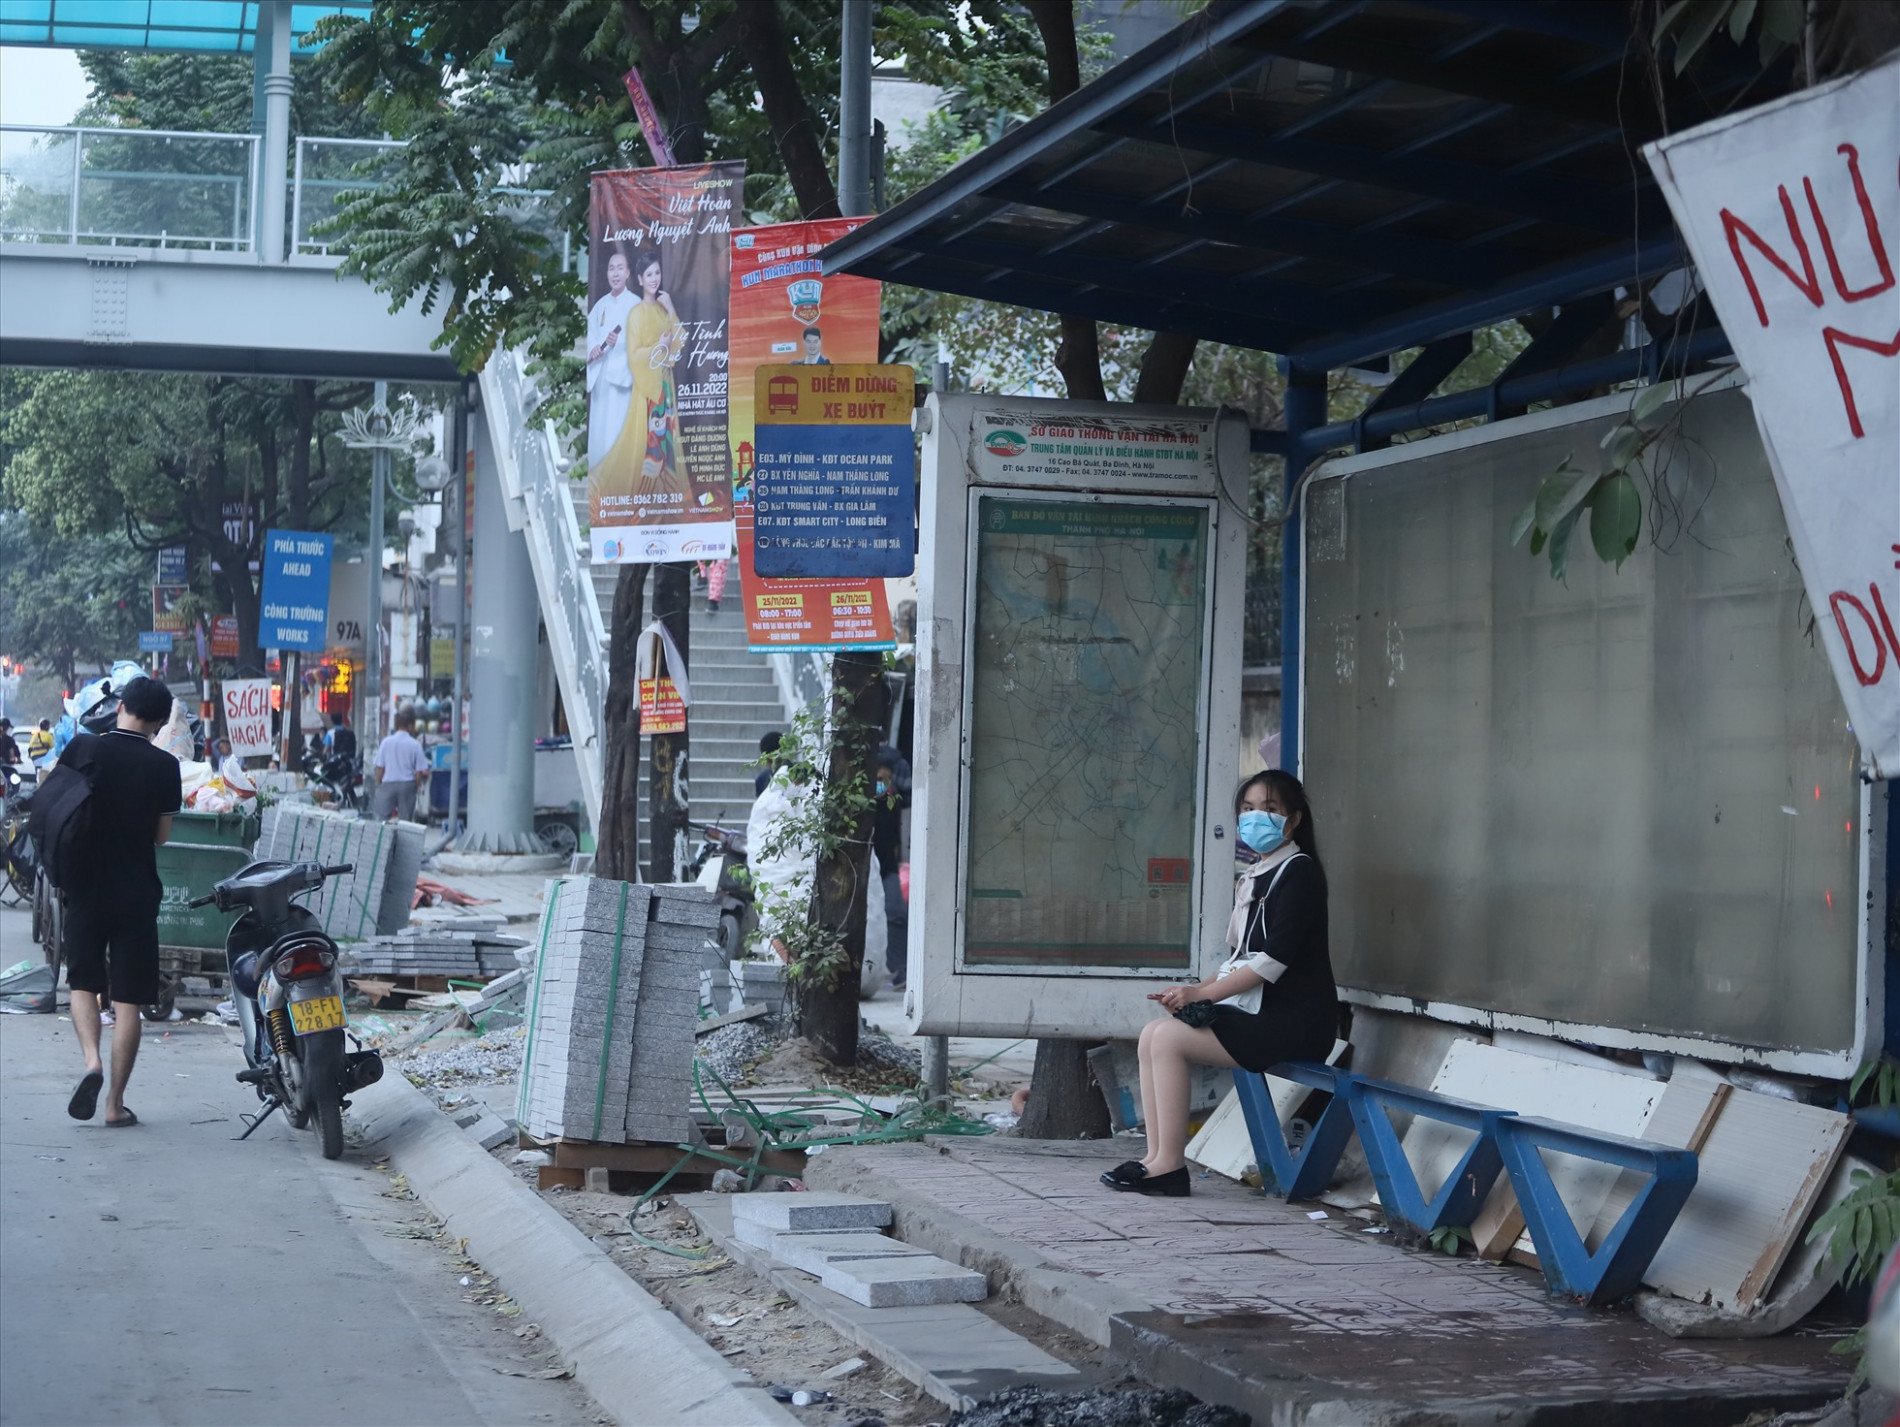 Khu vực nhà chờ xe buýt trên đường Nguyễn Chí Thanh bị quây bởi vật liệu xây dựng.